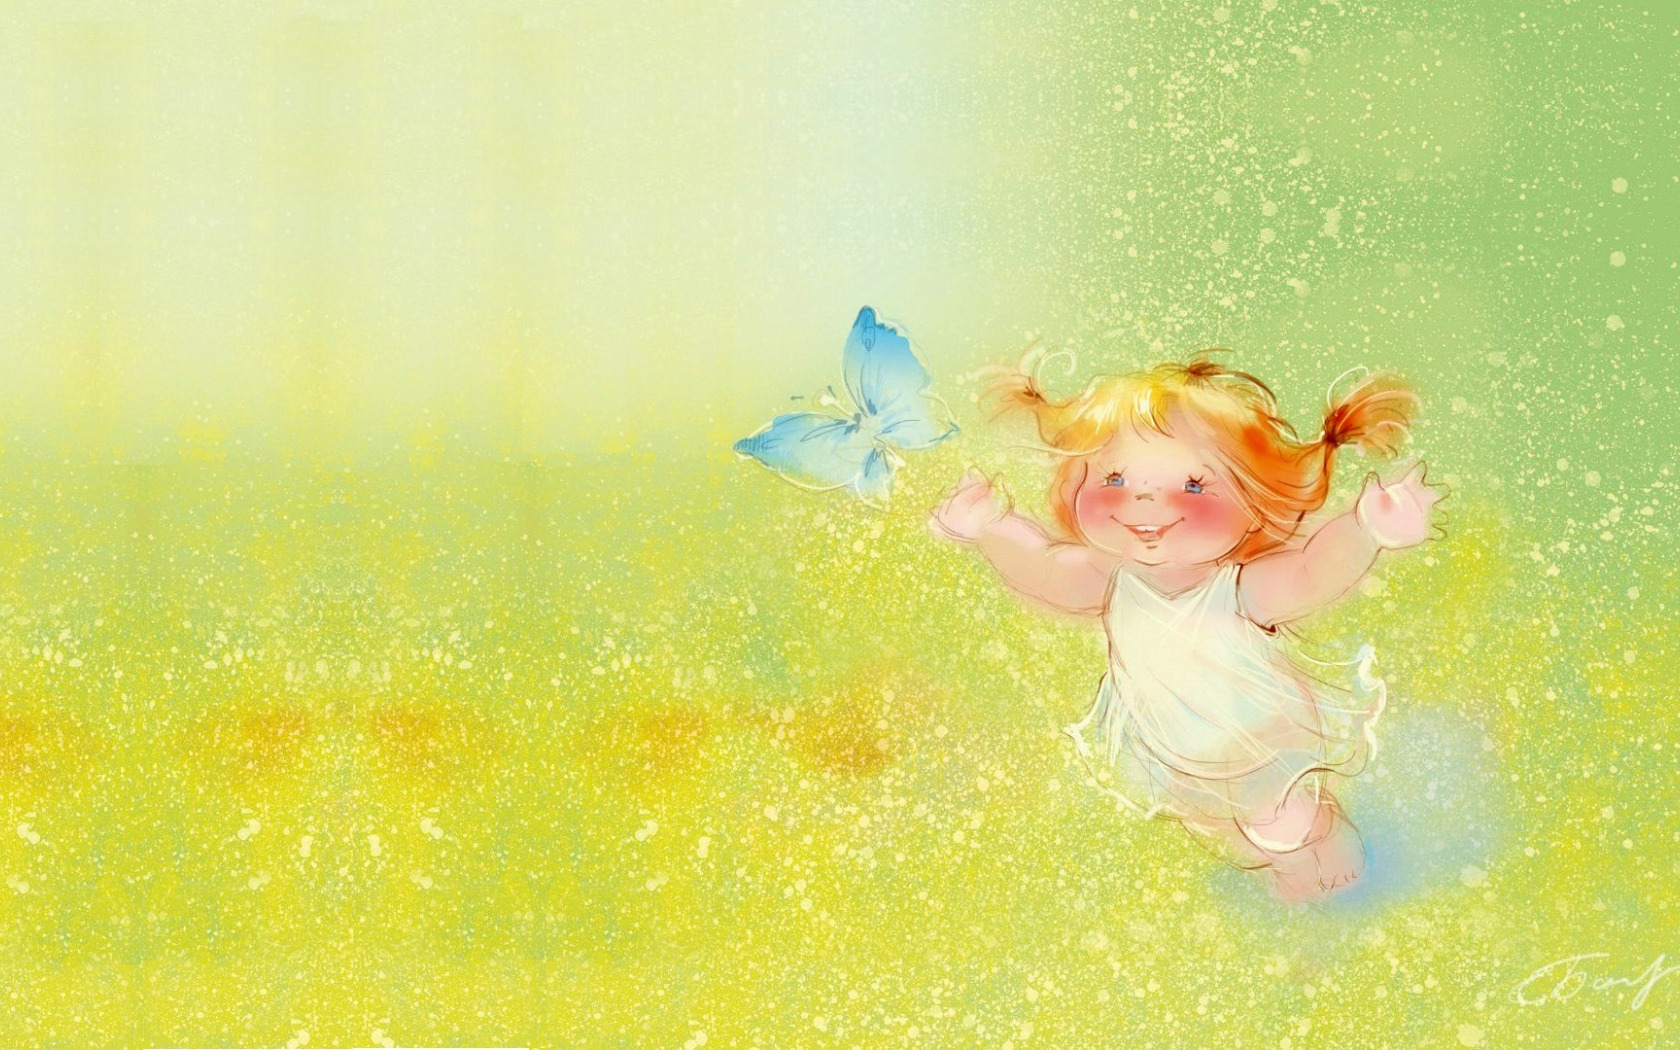 Радости и света в душе. Солнечная девочка. Радостные иллюстрации. Счастье солнце.